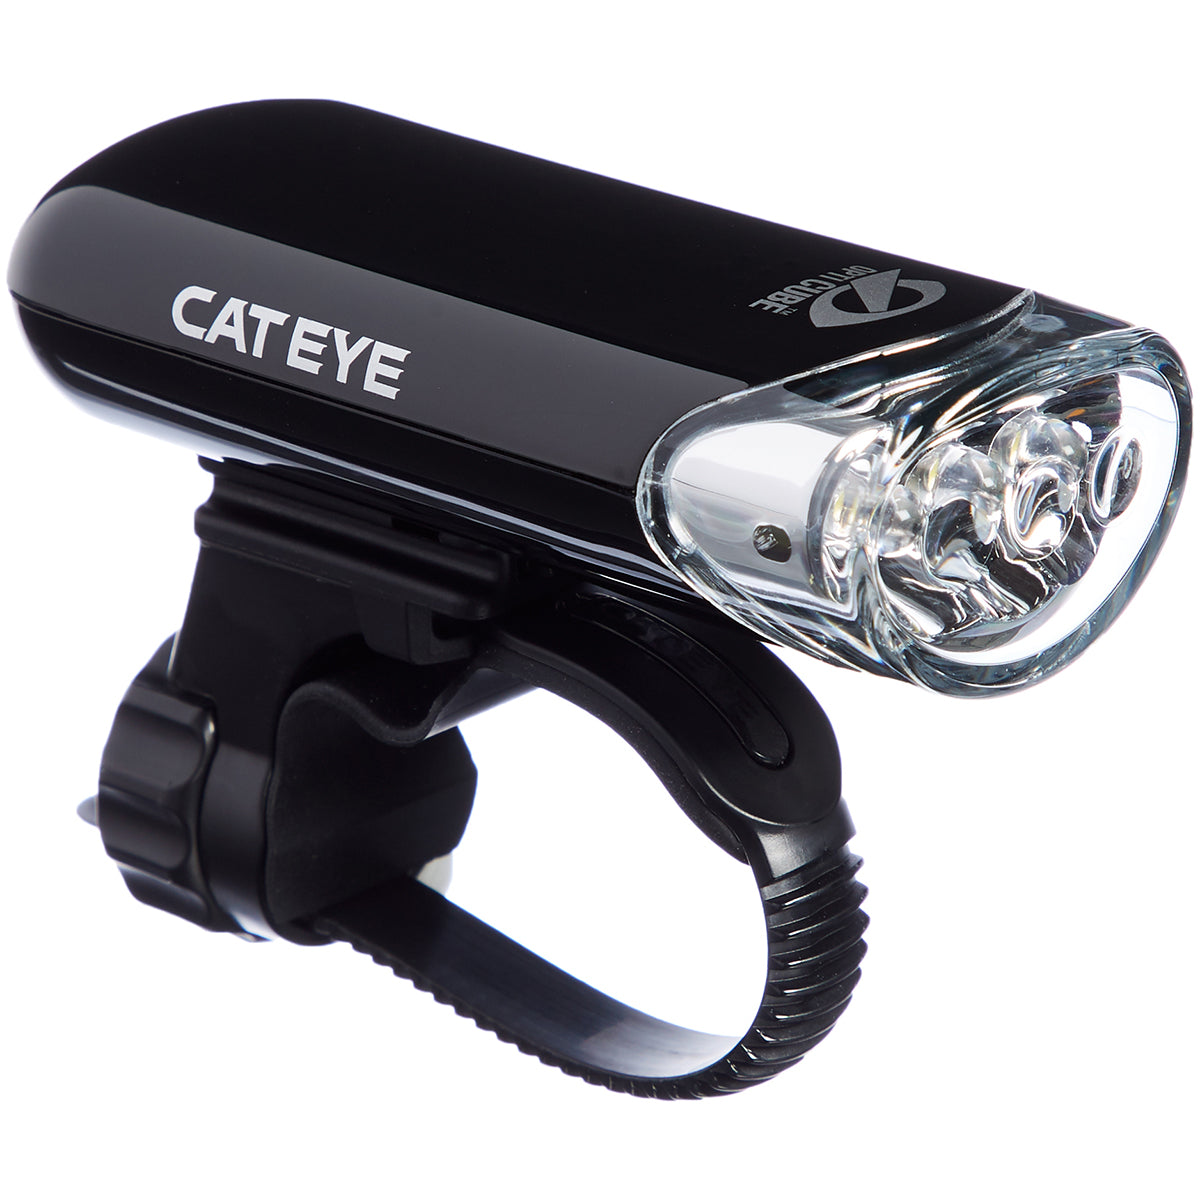 CatEye Cycling Headlight - HL-EL135N CatEye